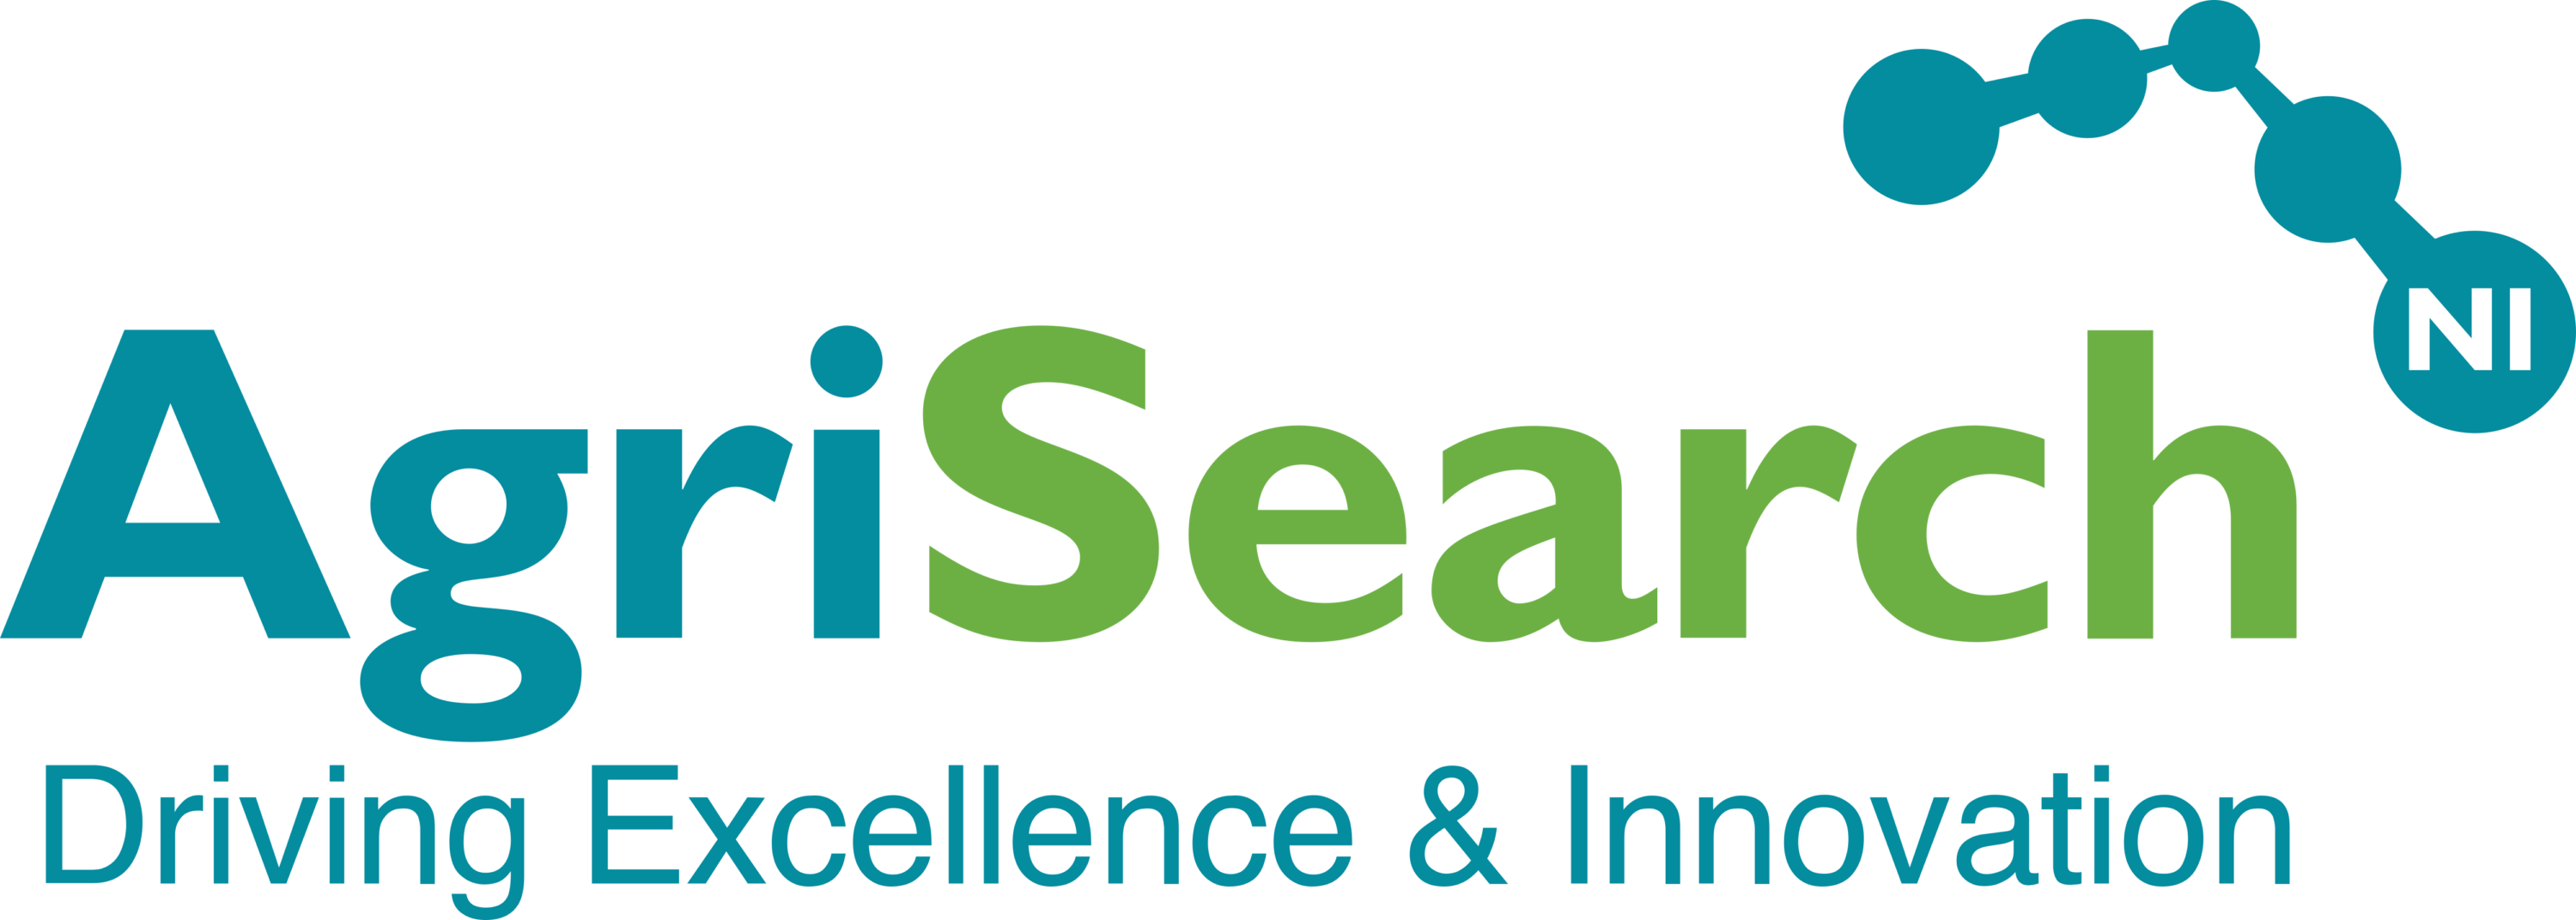 AgriSearch Logo